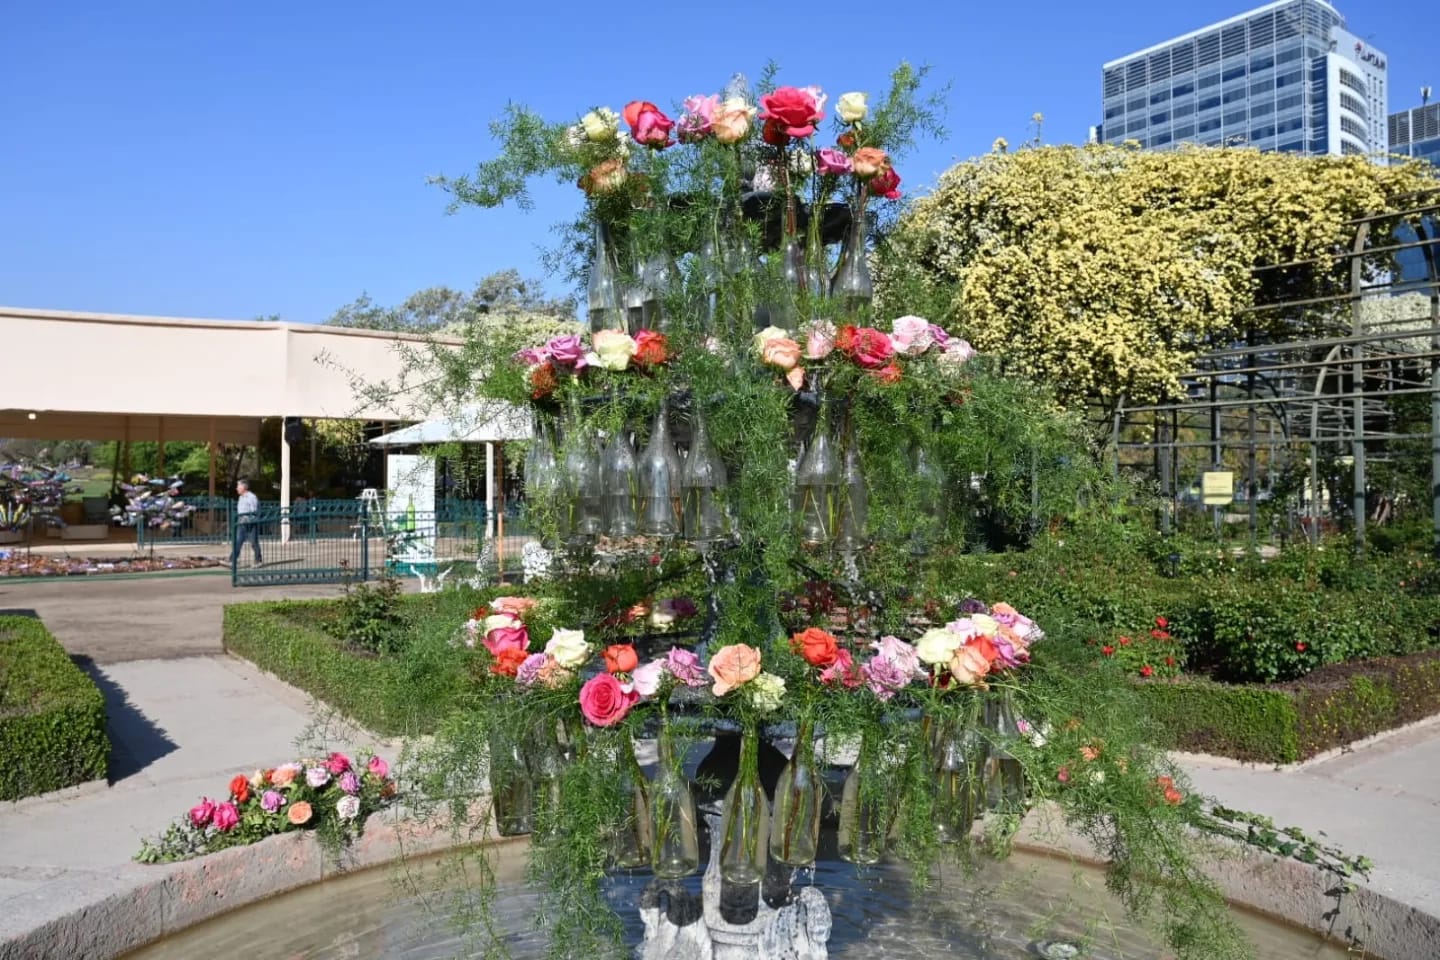 Intervención artística en pileta del Rosedal con más de 150 rosas en botellas.